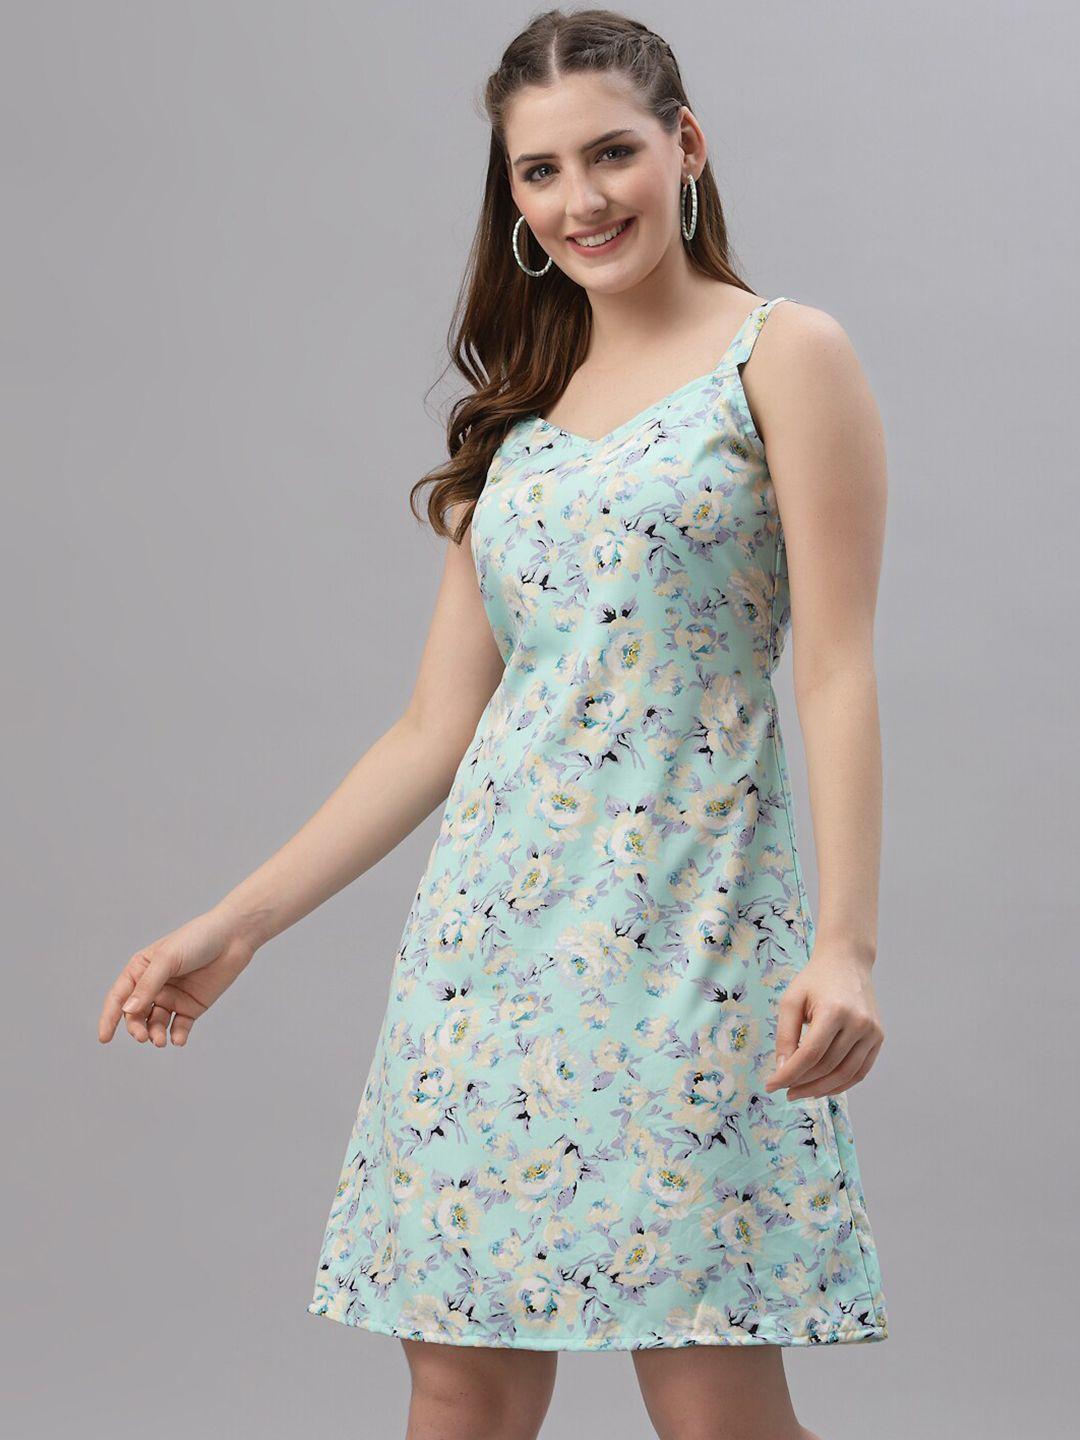 baesd floral printed shoulder straps a-line dress